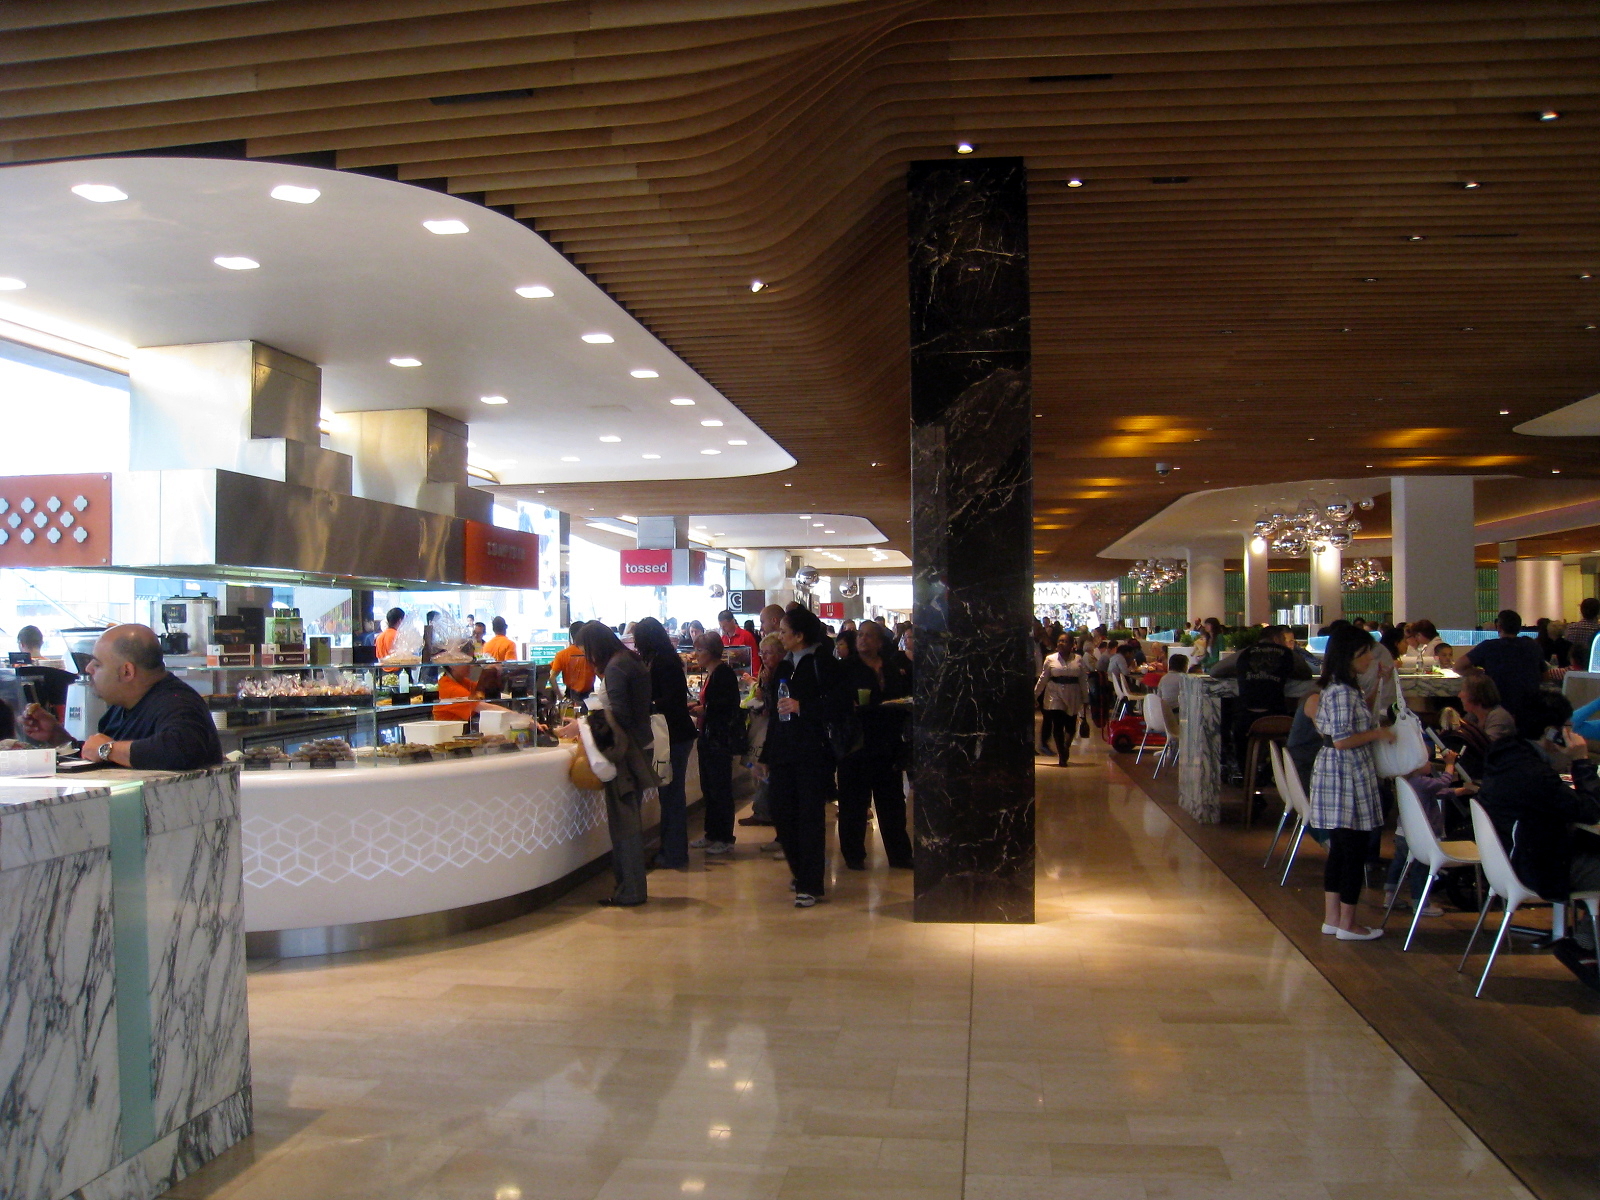 File:Westfield London Food Court 200906.jpg - Wikipedia